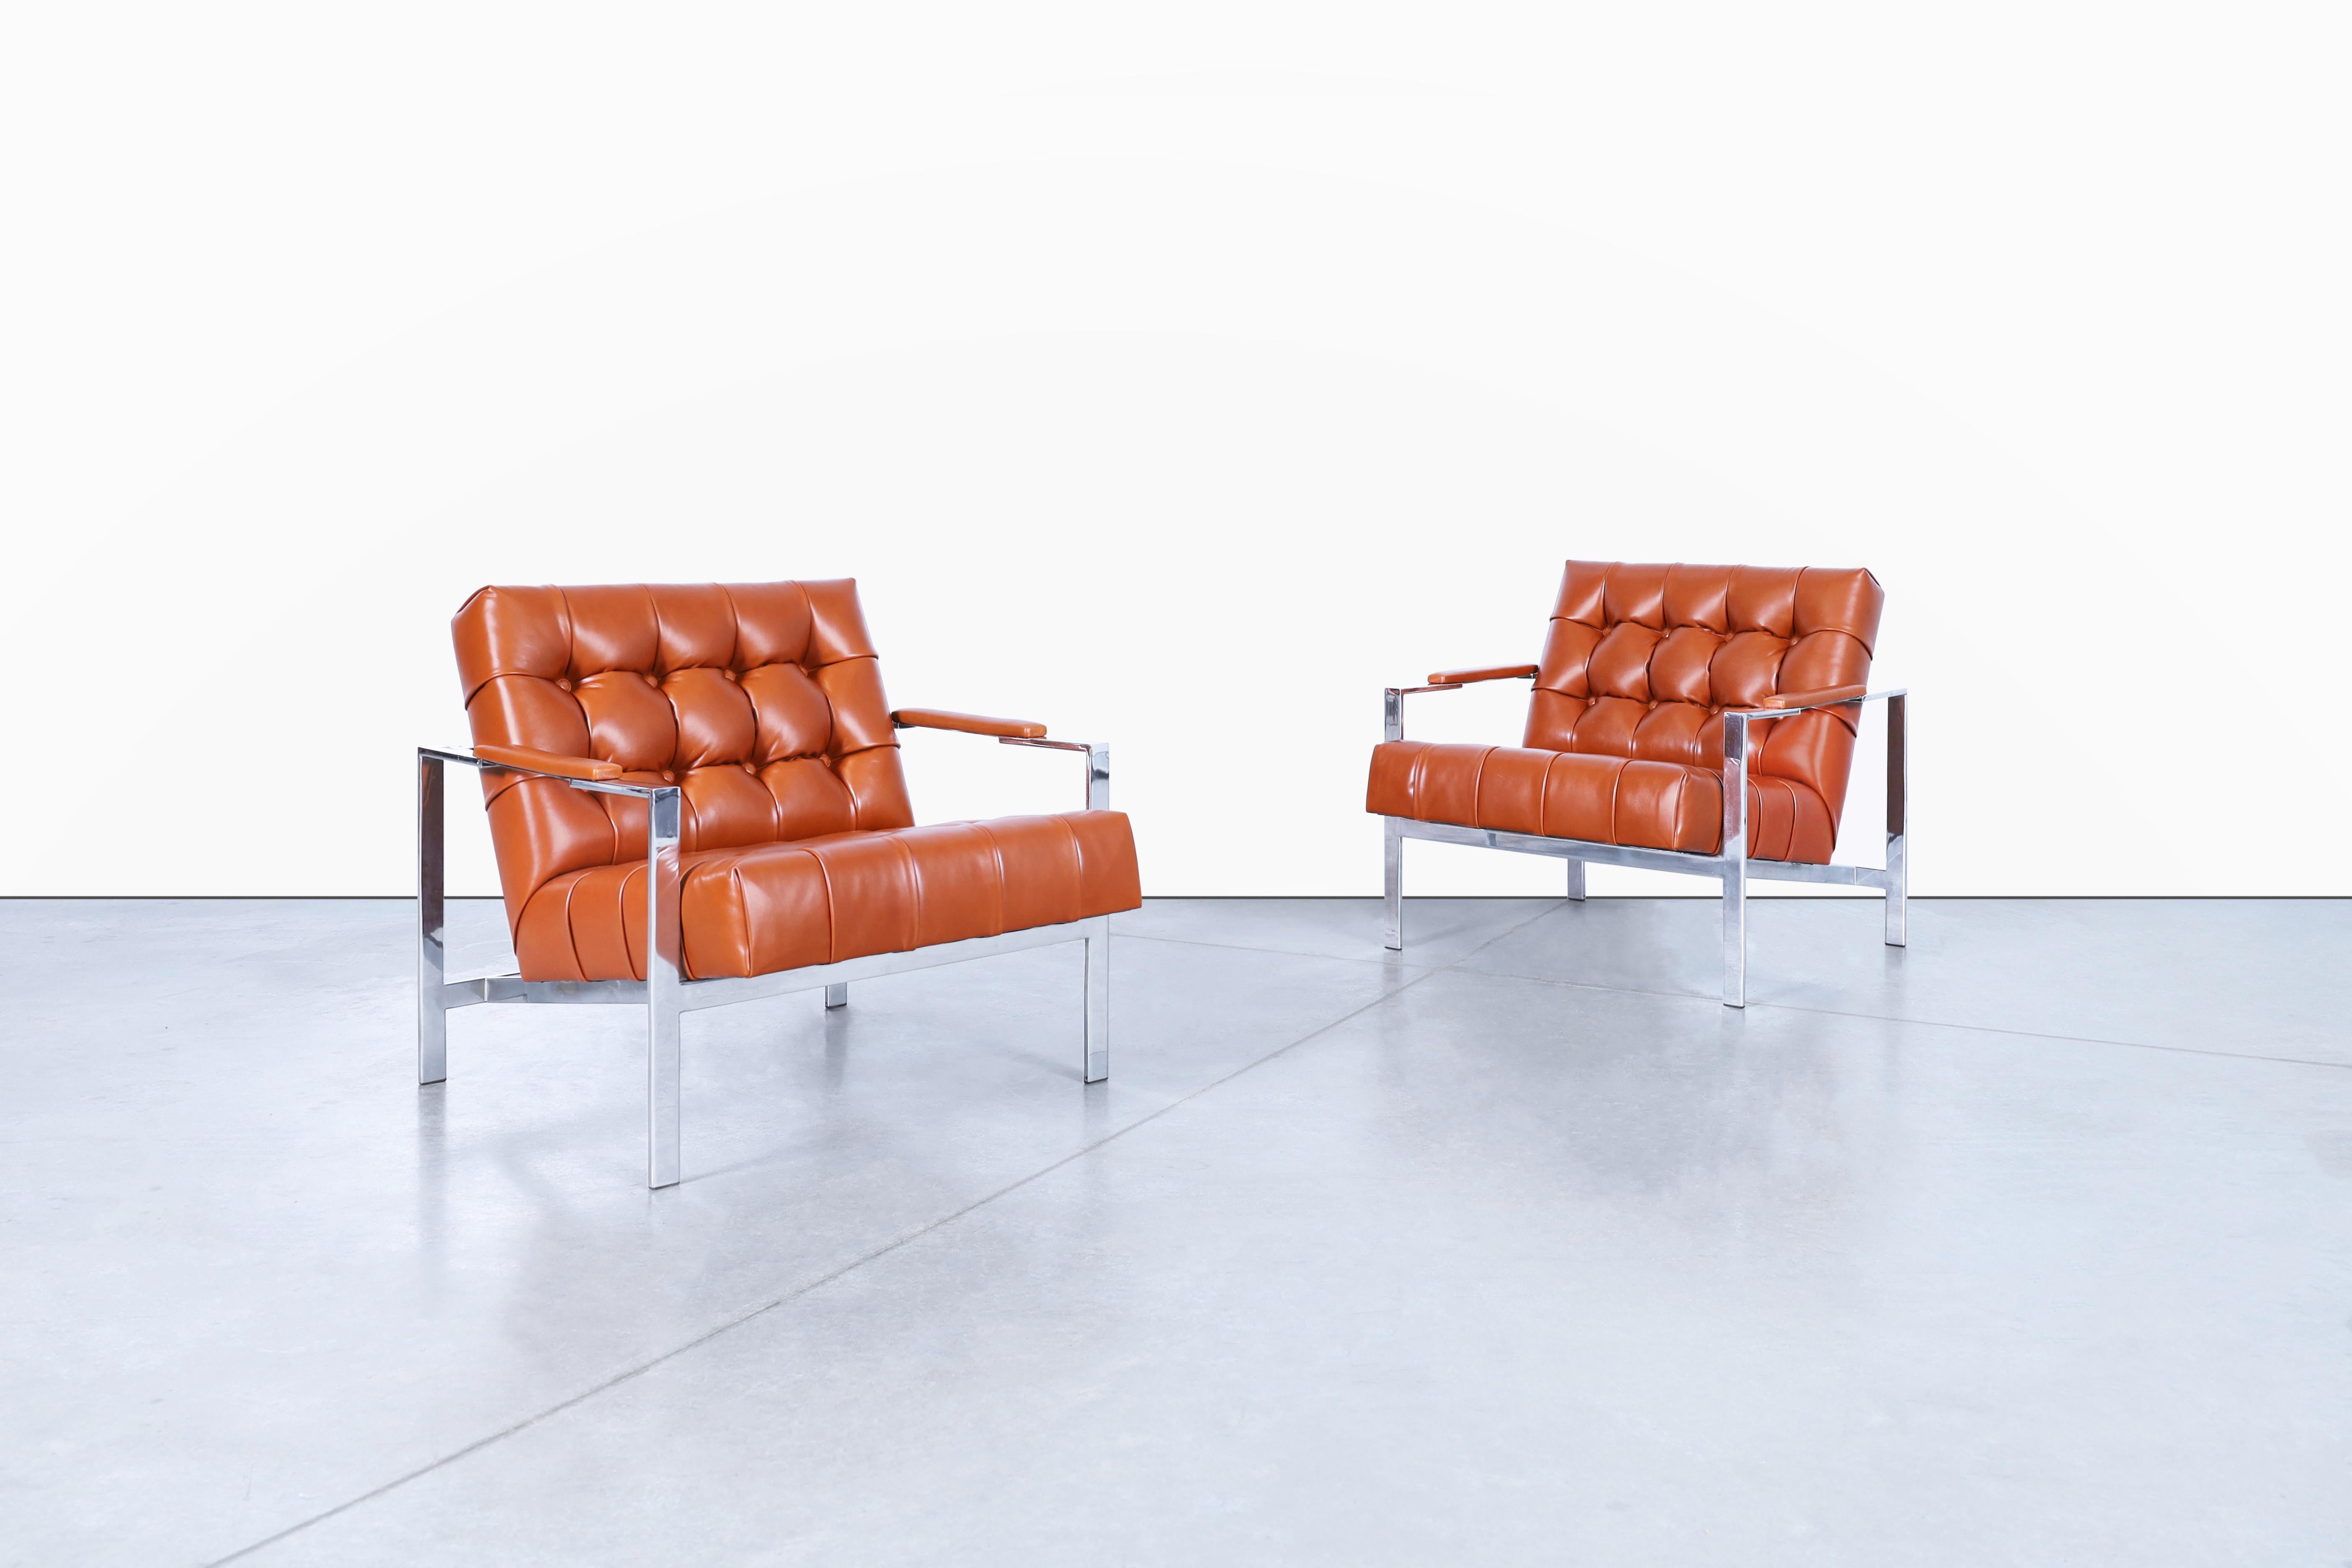 Merveilleuses chaises longues chromées vintage conçues par Milo Baughman pour Thayer/One aux États-Unis, vers les années 1970. Transformez votre espace de vie en une oasis moderne avec ces chaises intemporelles et sophistiquées. Le cadre en chrome